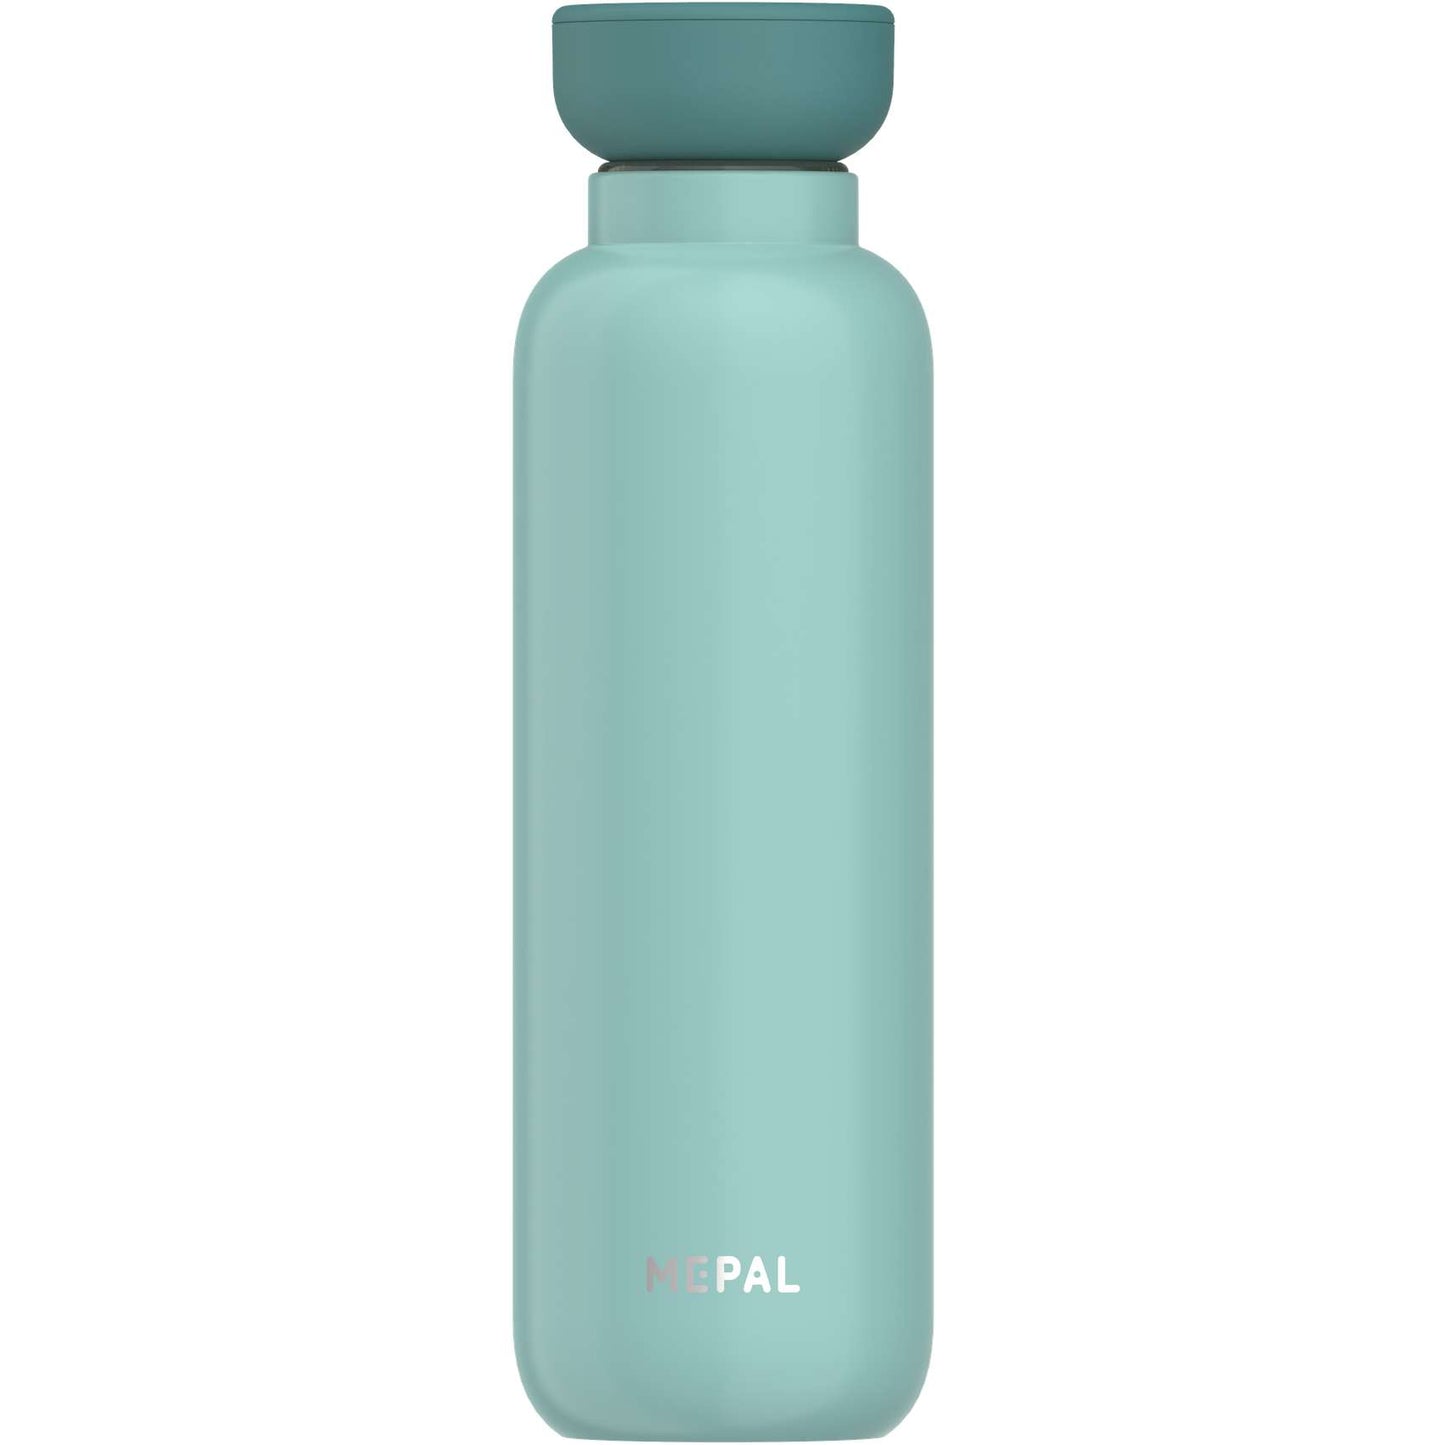 Mepal ELLIPSE Water Bottle Insulated - Medium - KitchenEnvy